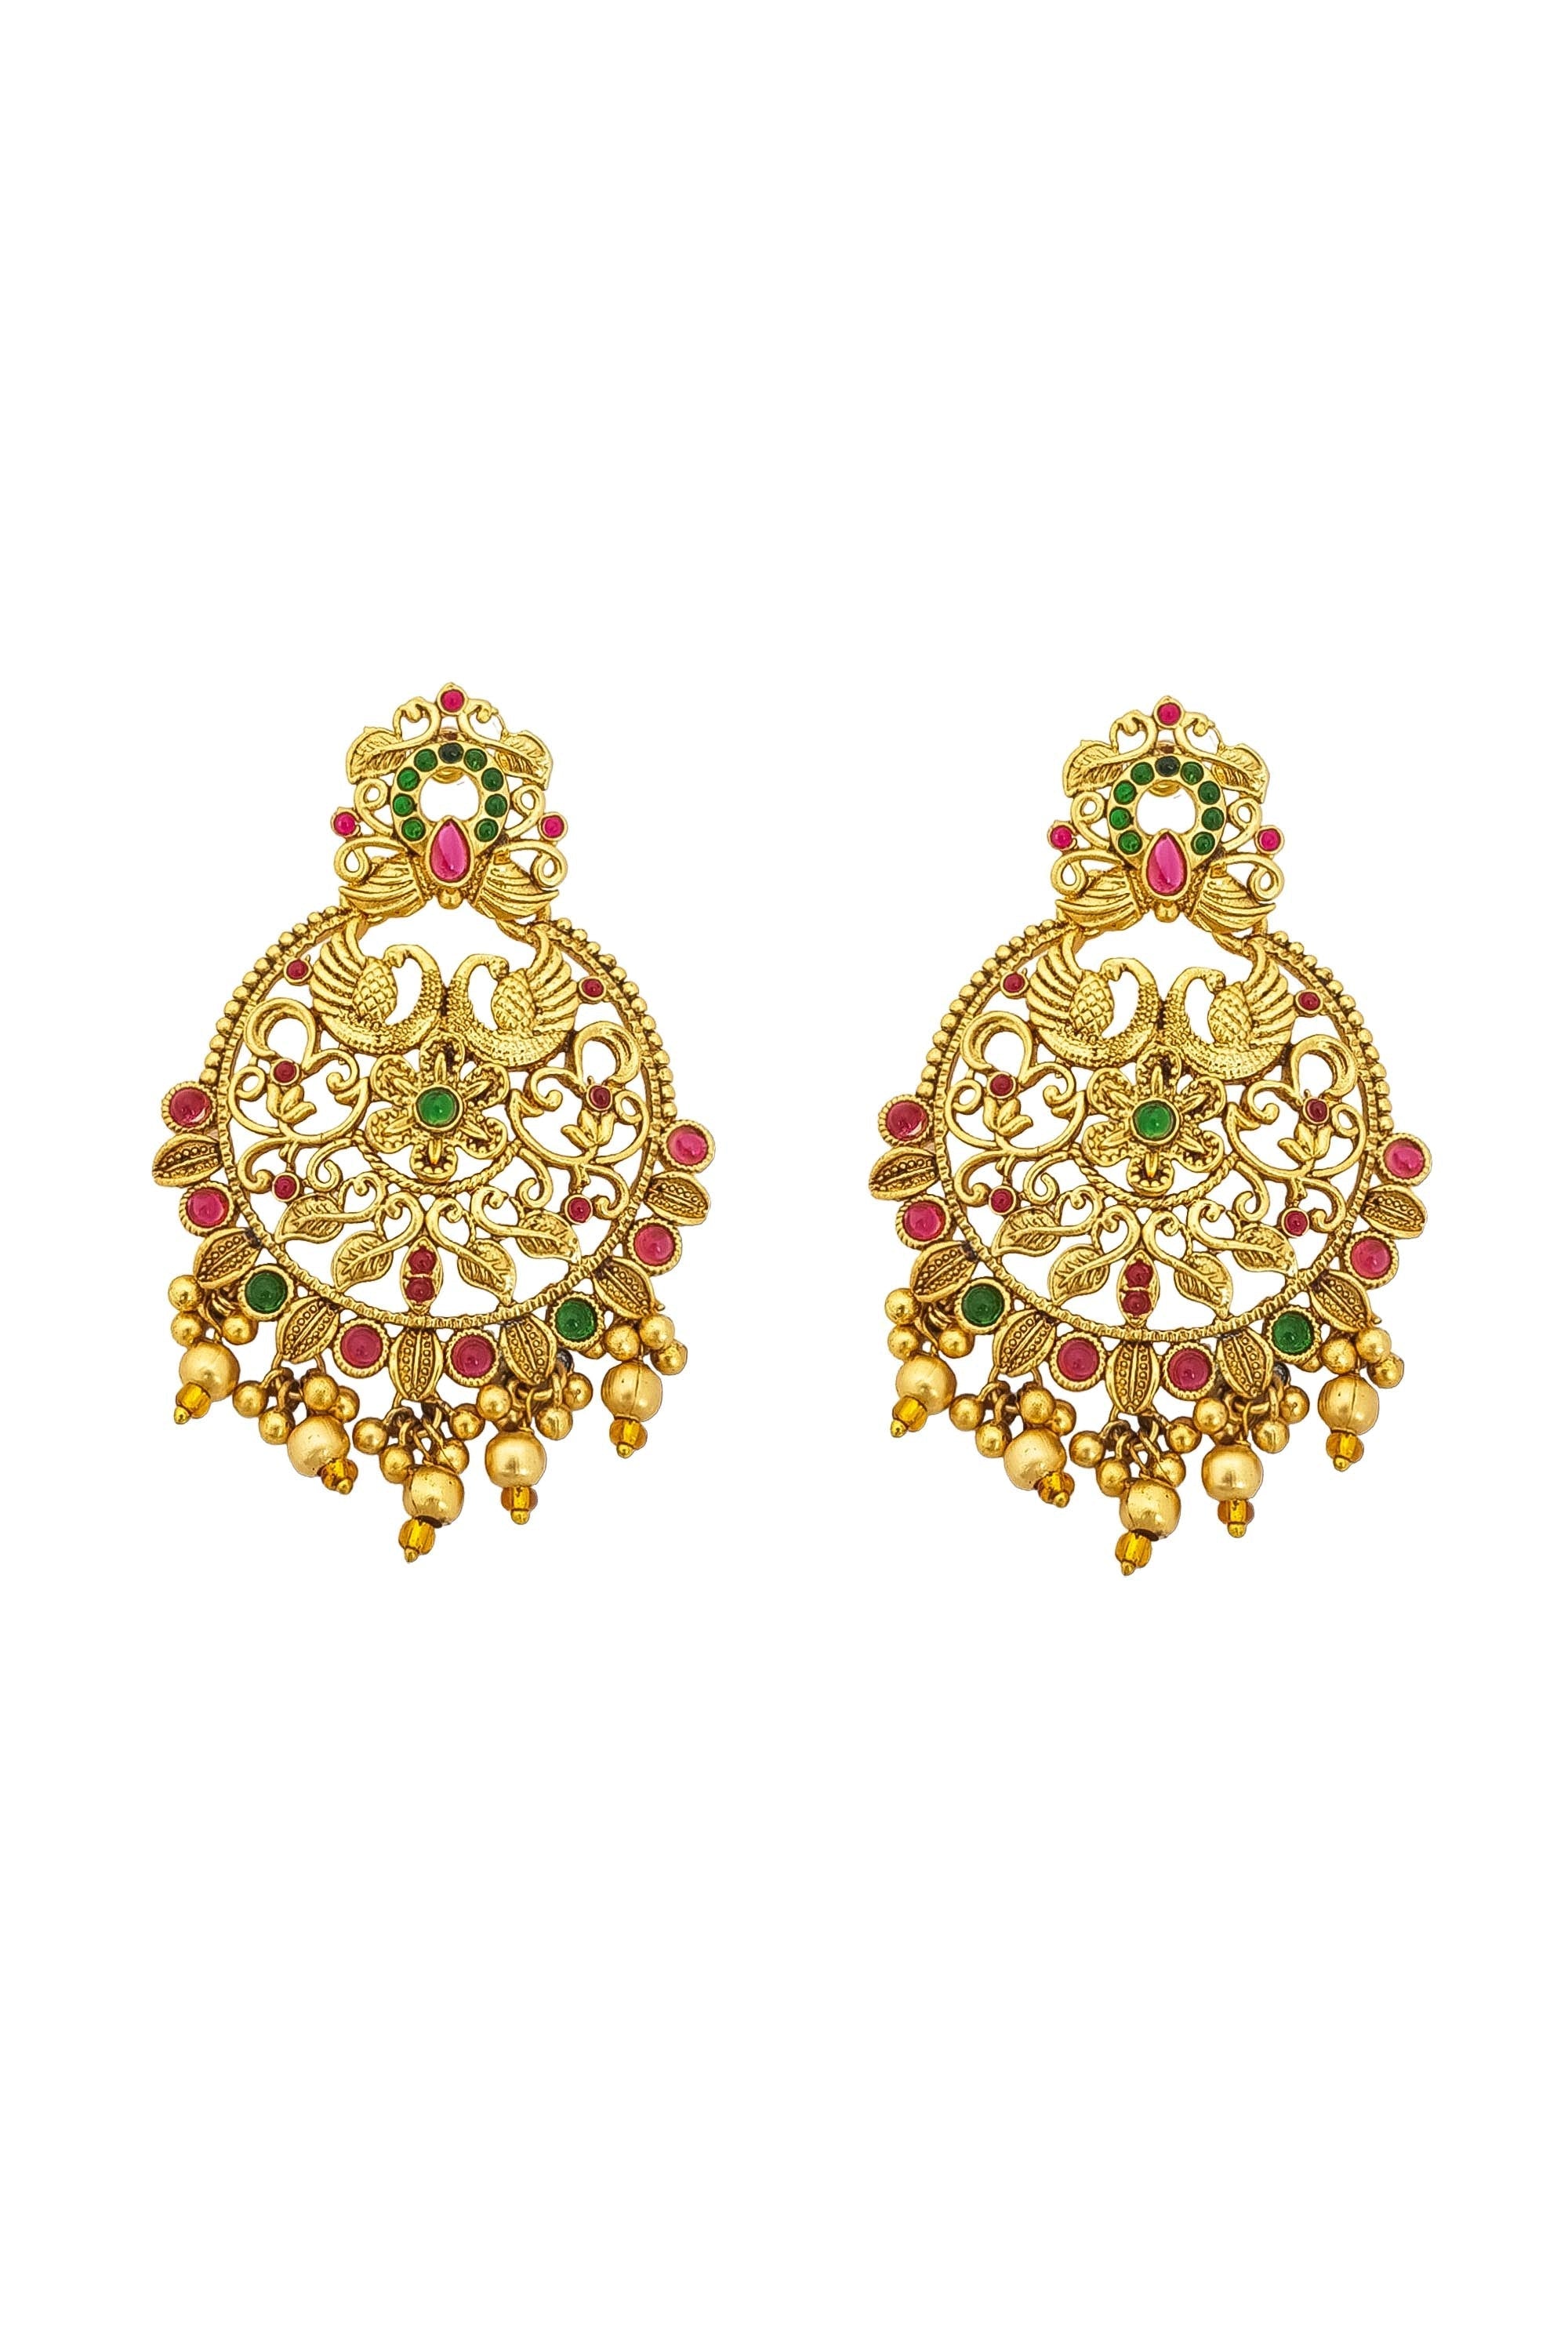 Designer Temple earrings Jhumka 17376N